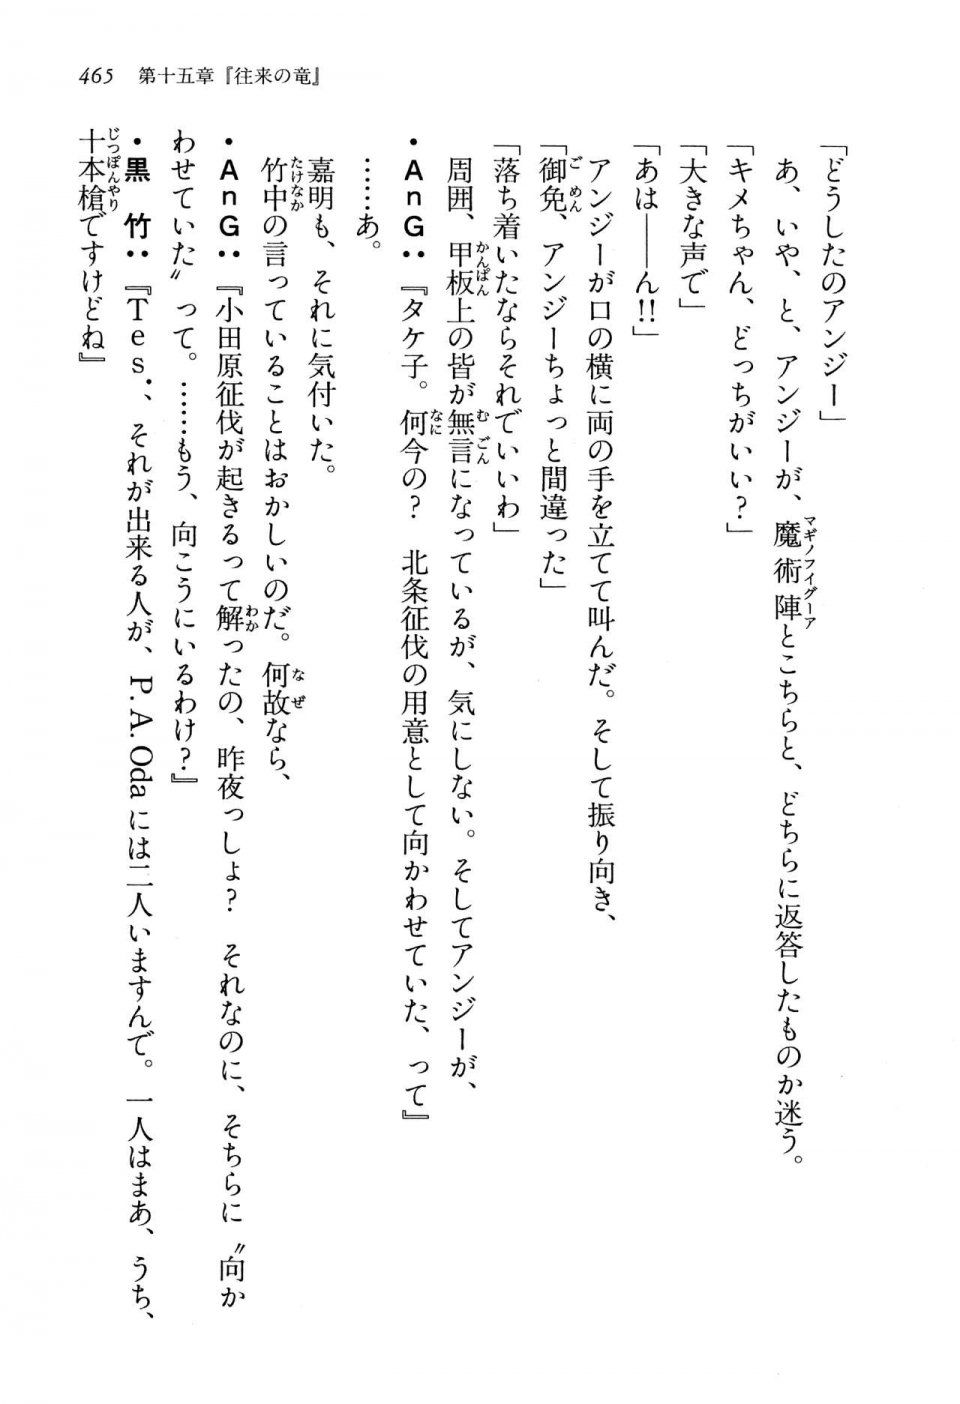 Kyoukai Senjou no Horizon LN Vol 13(6A) - Photo #465